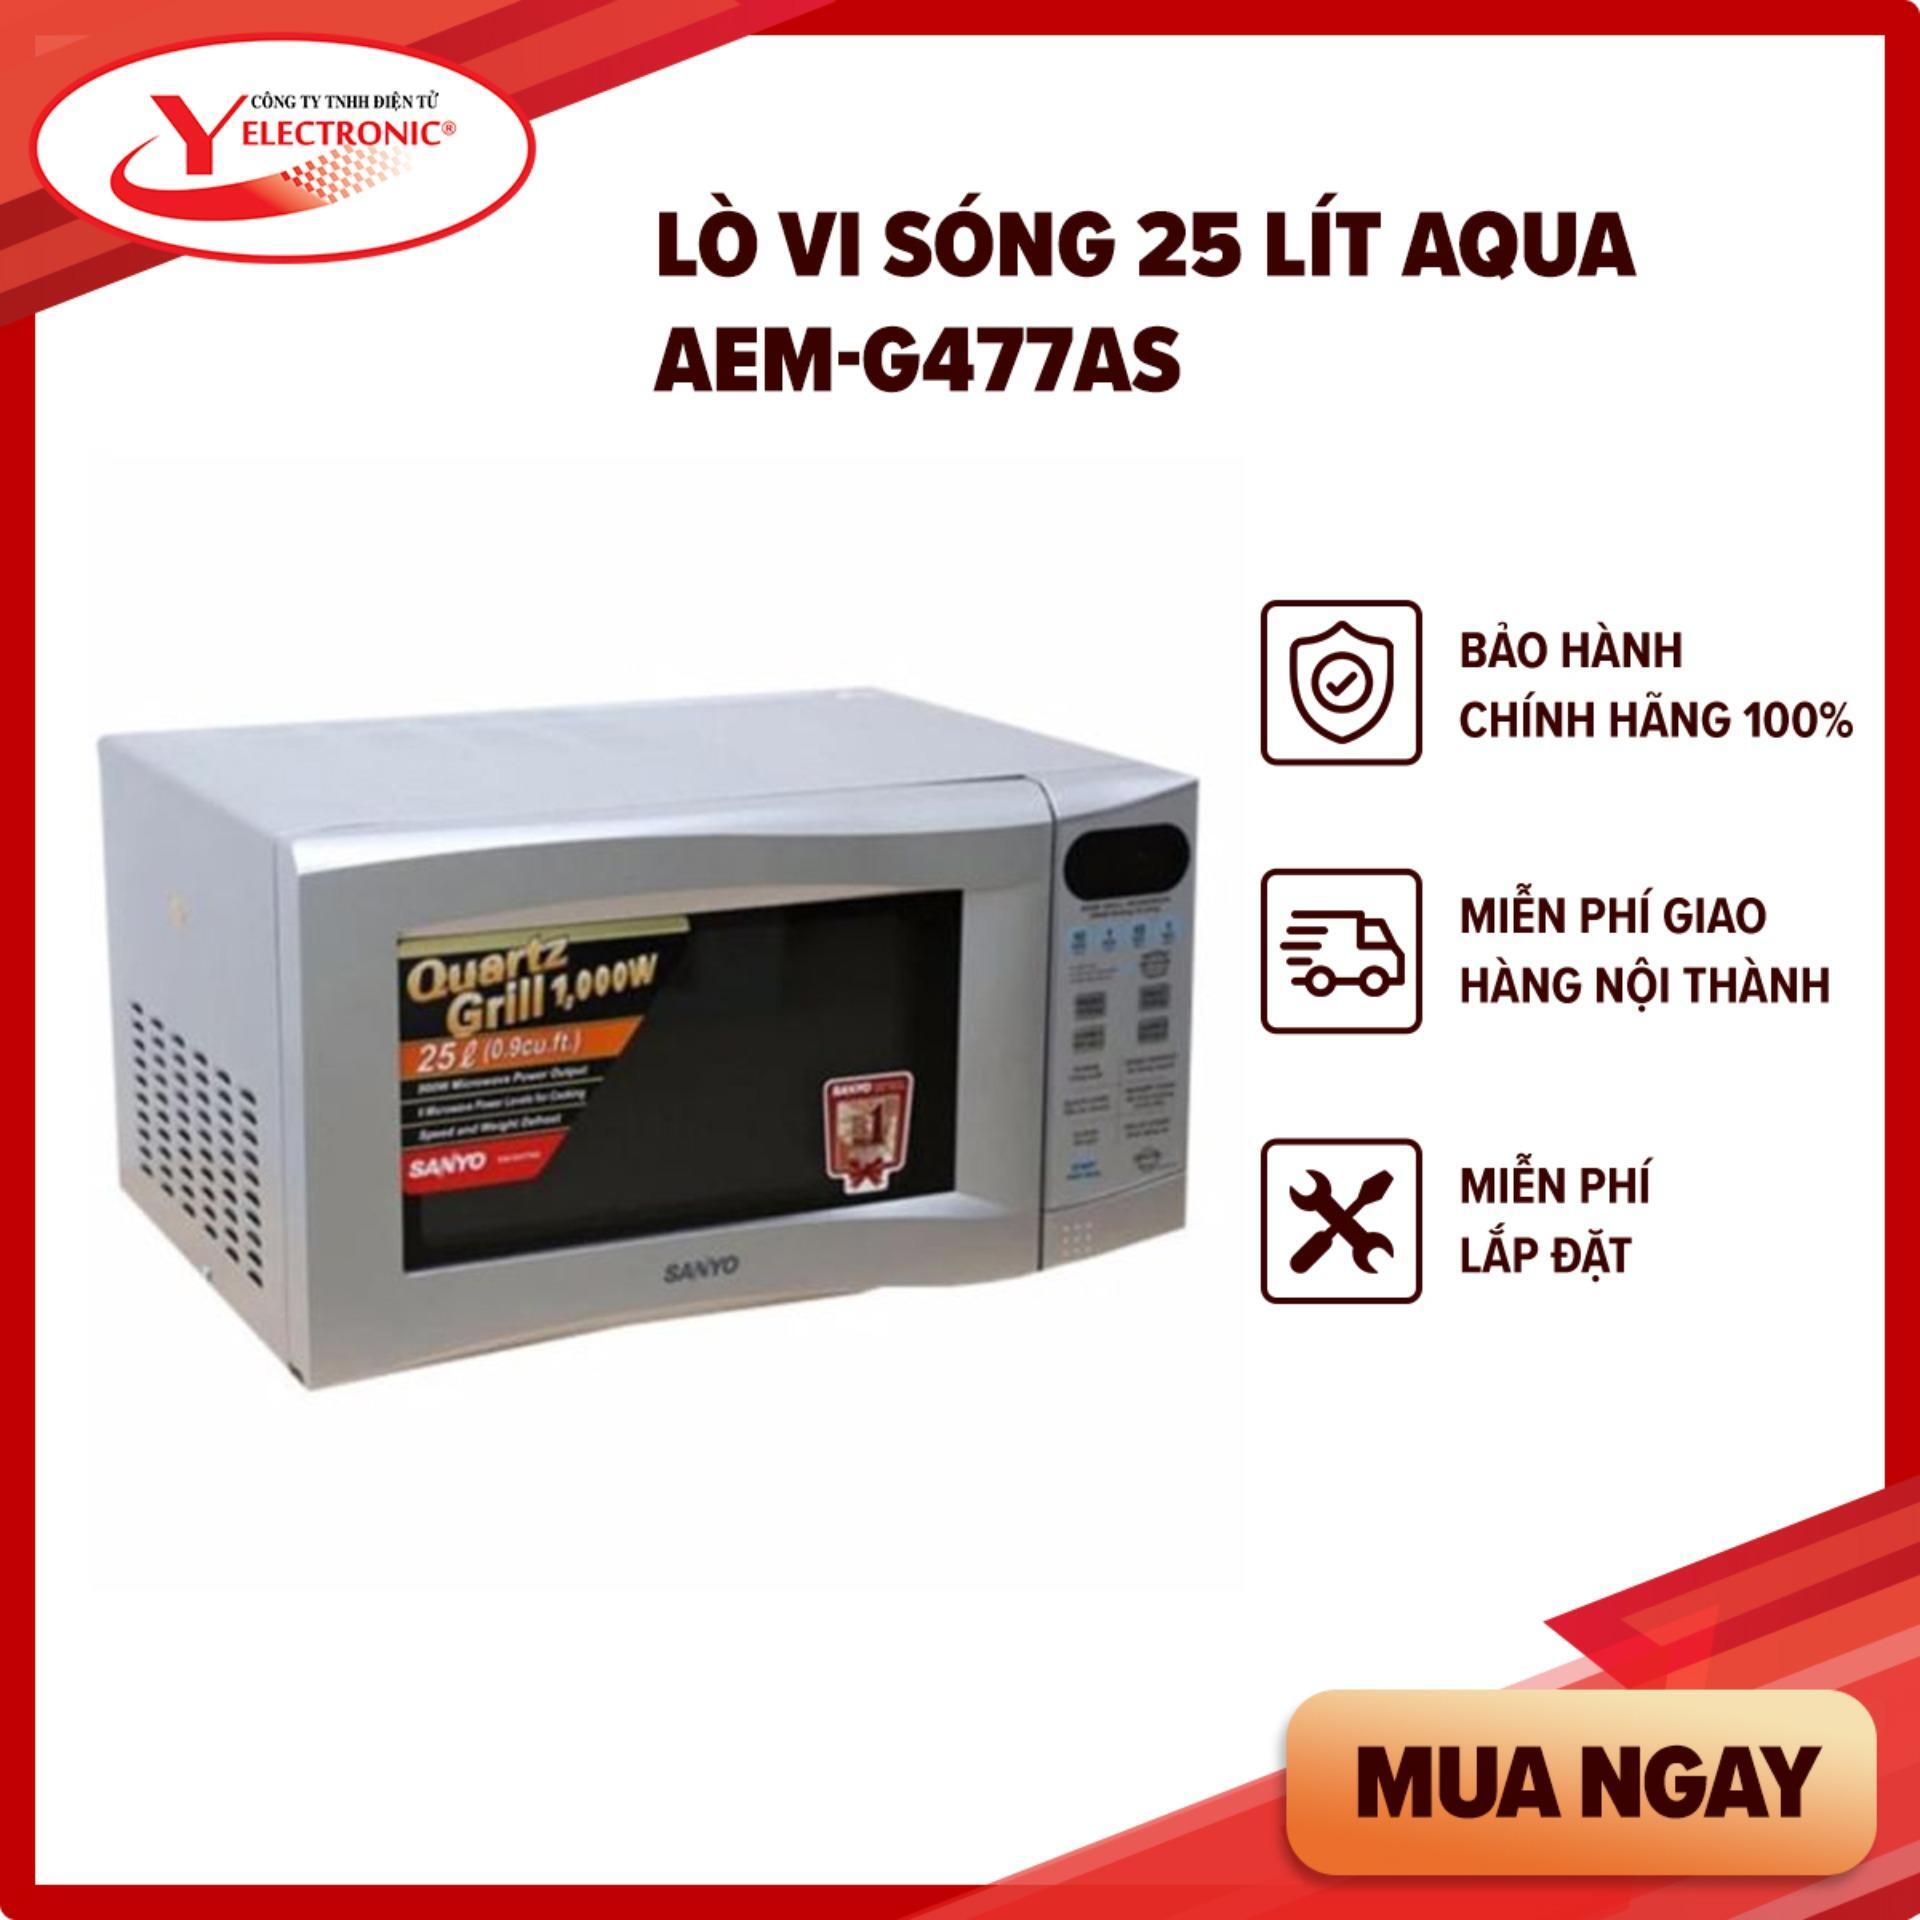 Lò vi sóng Aqua AEM- G477AS - 25 lít